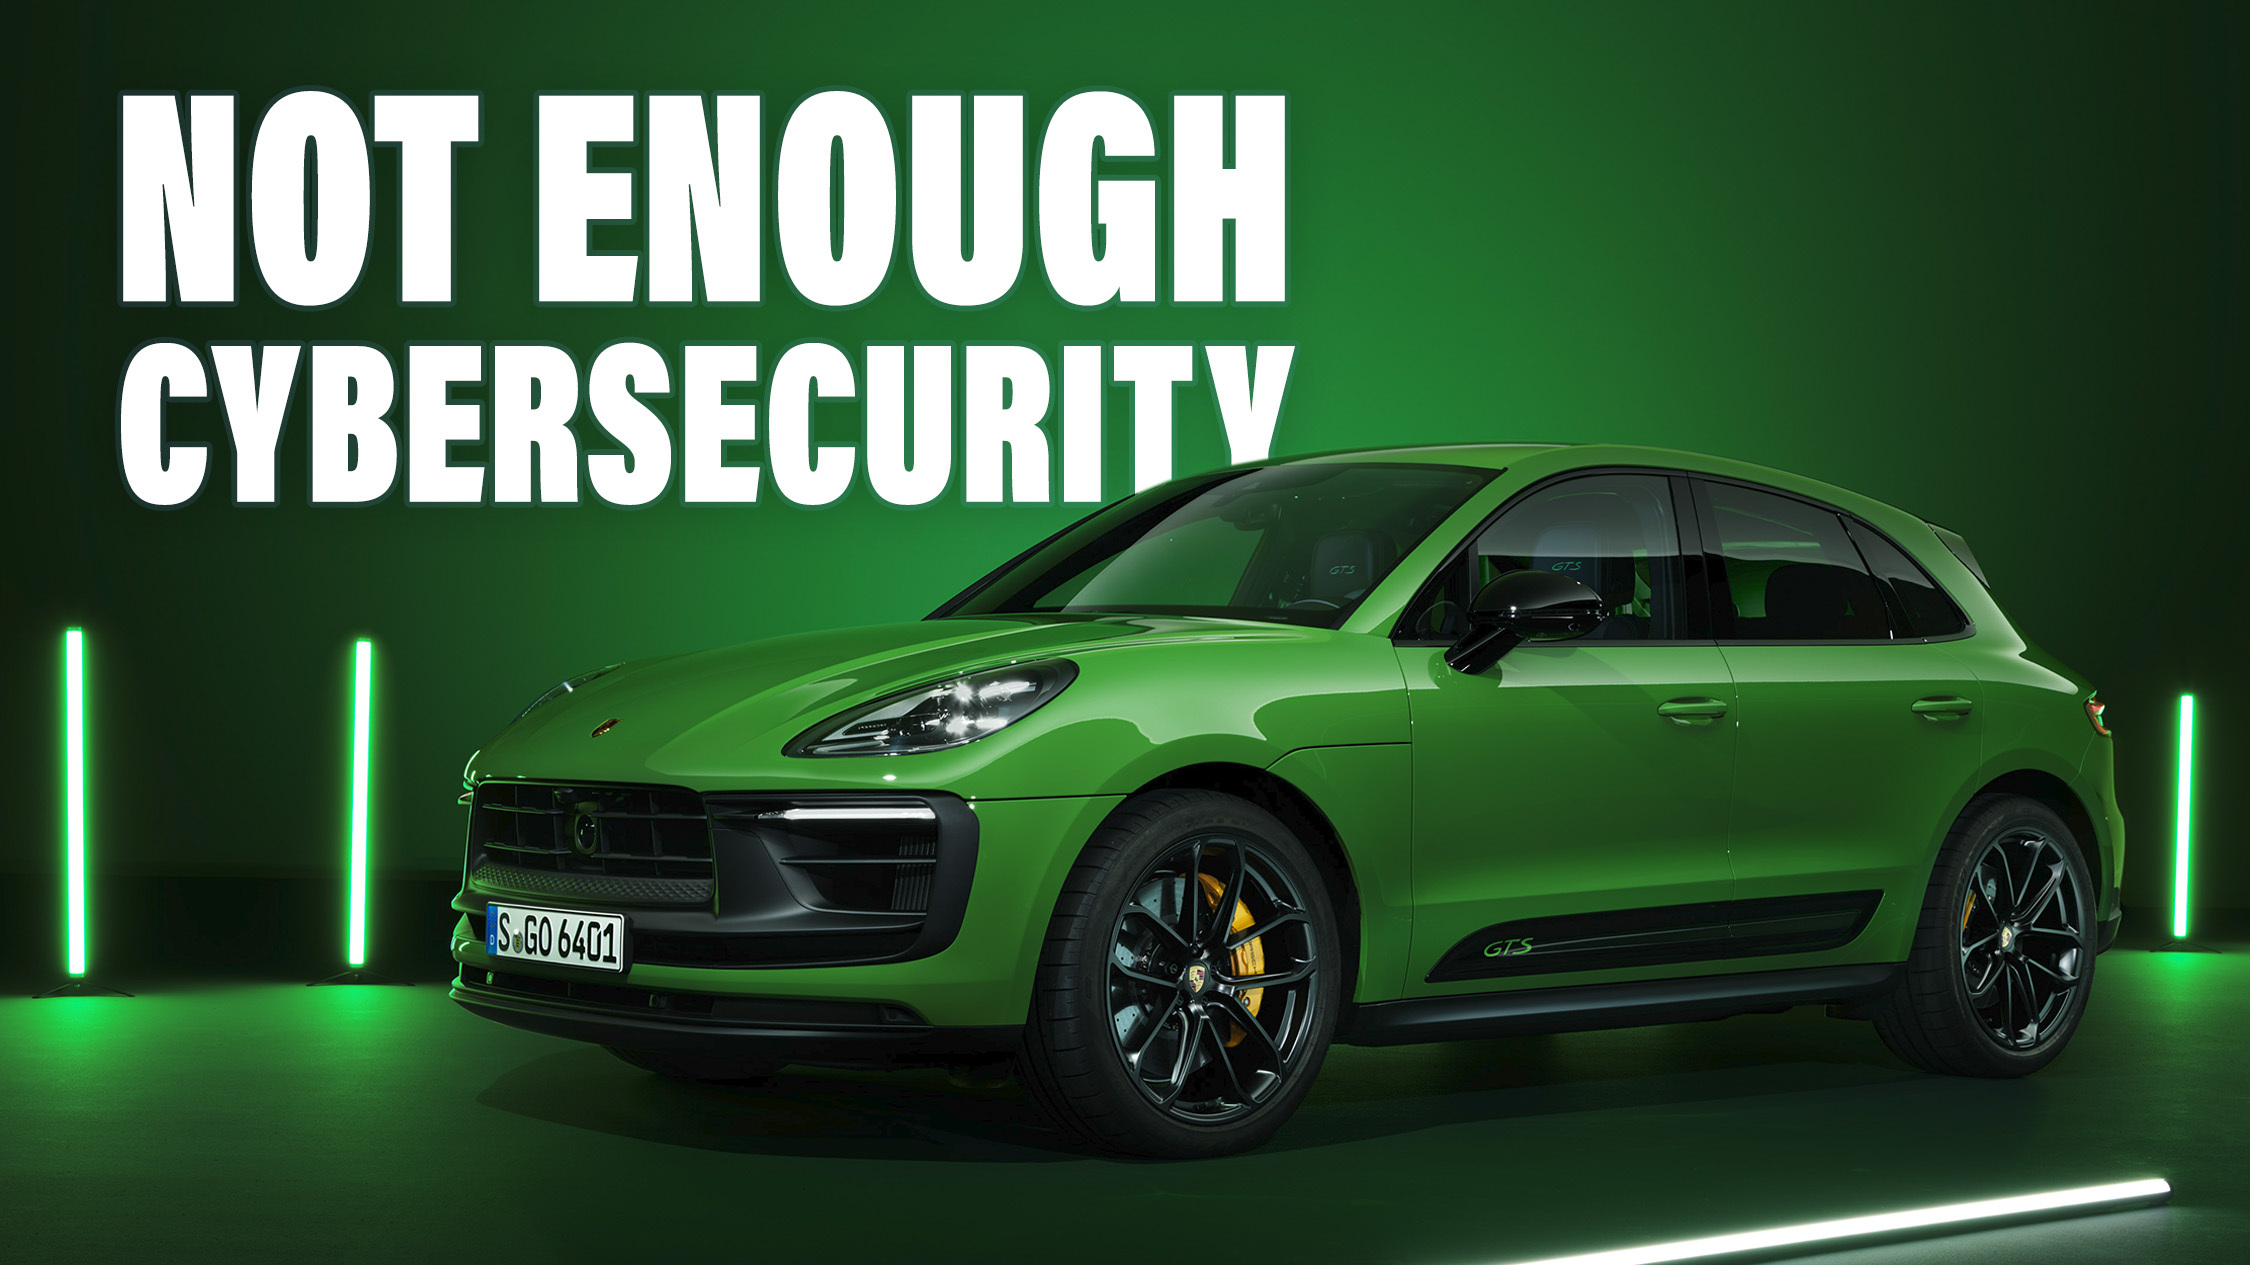 EU-Cybersicherheit​: Porsche Macan wird eingestellt​